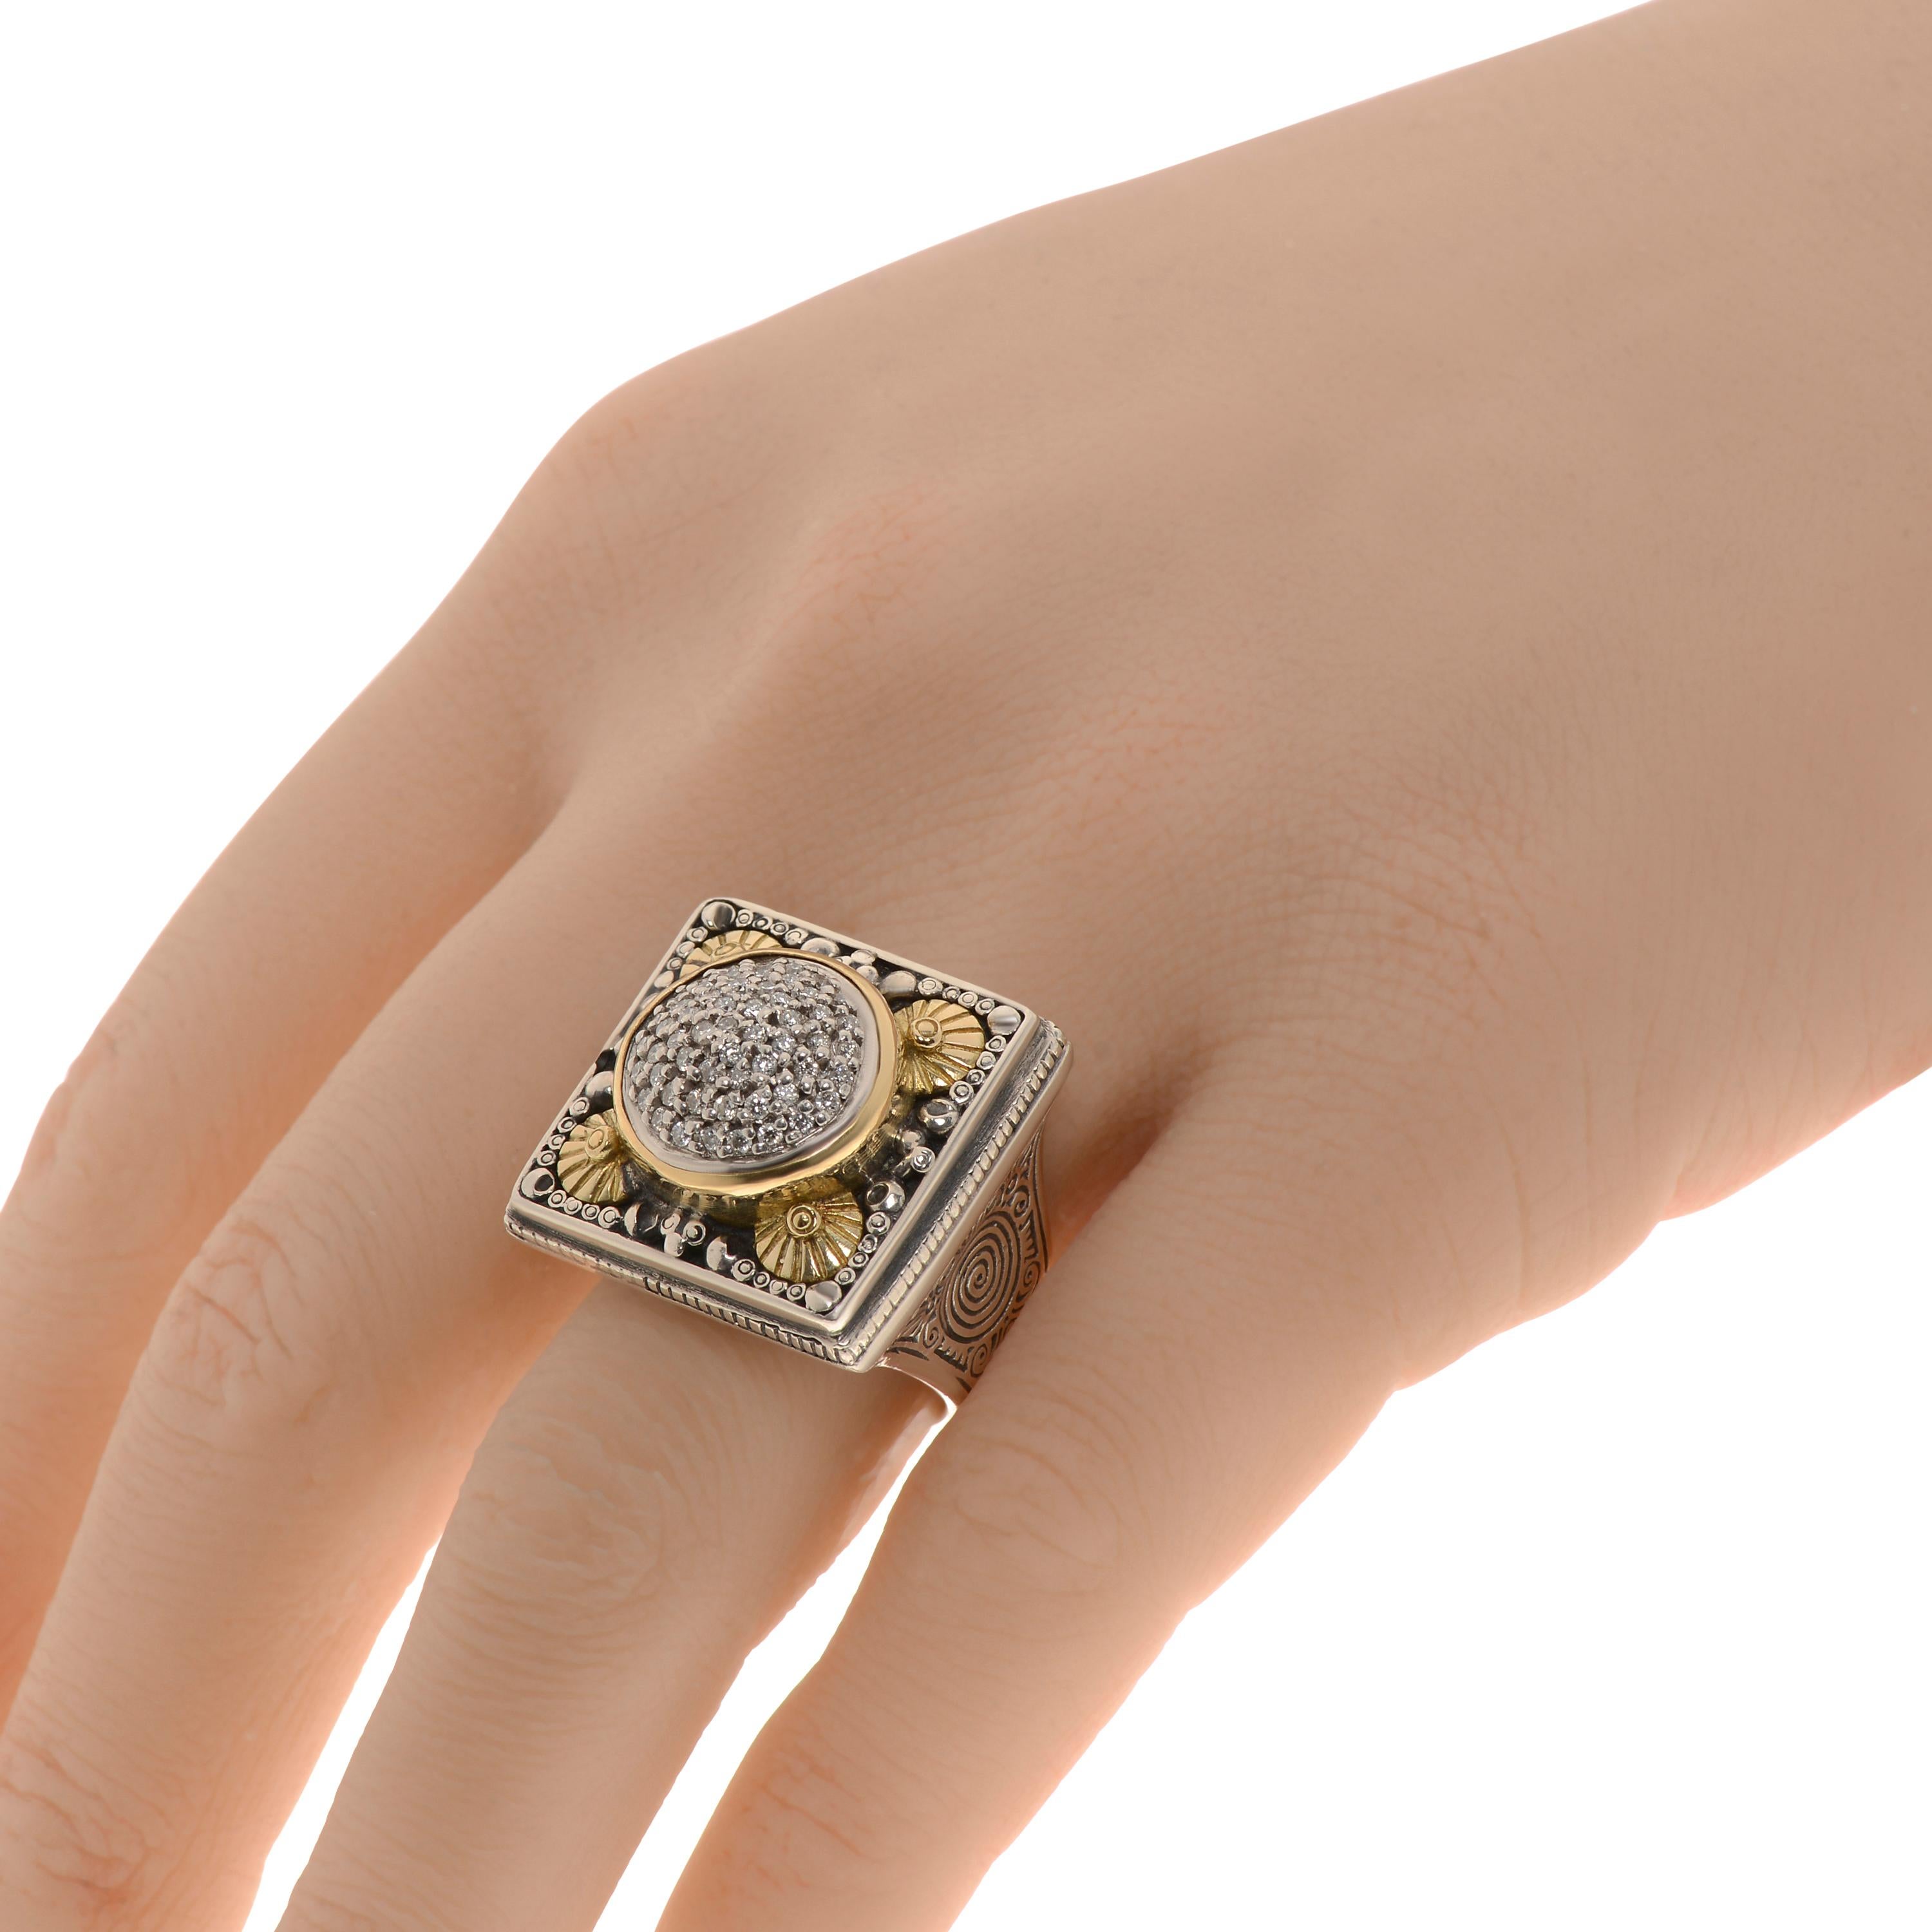 Der Konstantino Statement-Ring ist mit weißen Diamanten von 0,56 ct. tw. besetzt. Die Ringgröße beträgt 6,75 (53,8). Das Gesamtgewicht beträgt 28,6 g.
